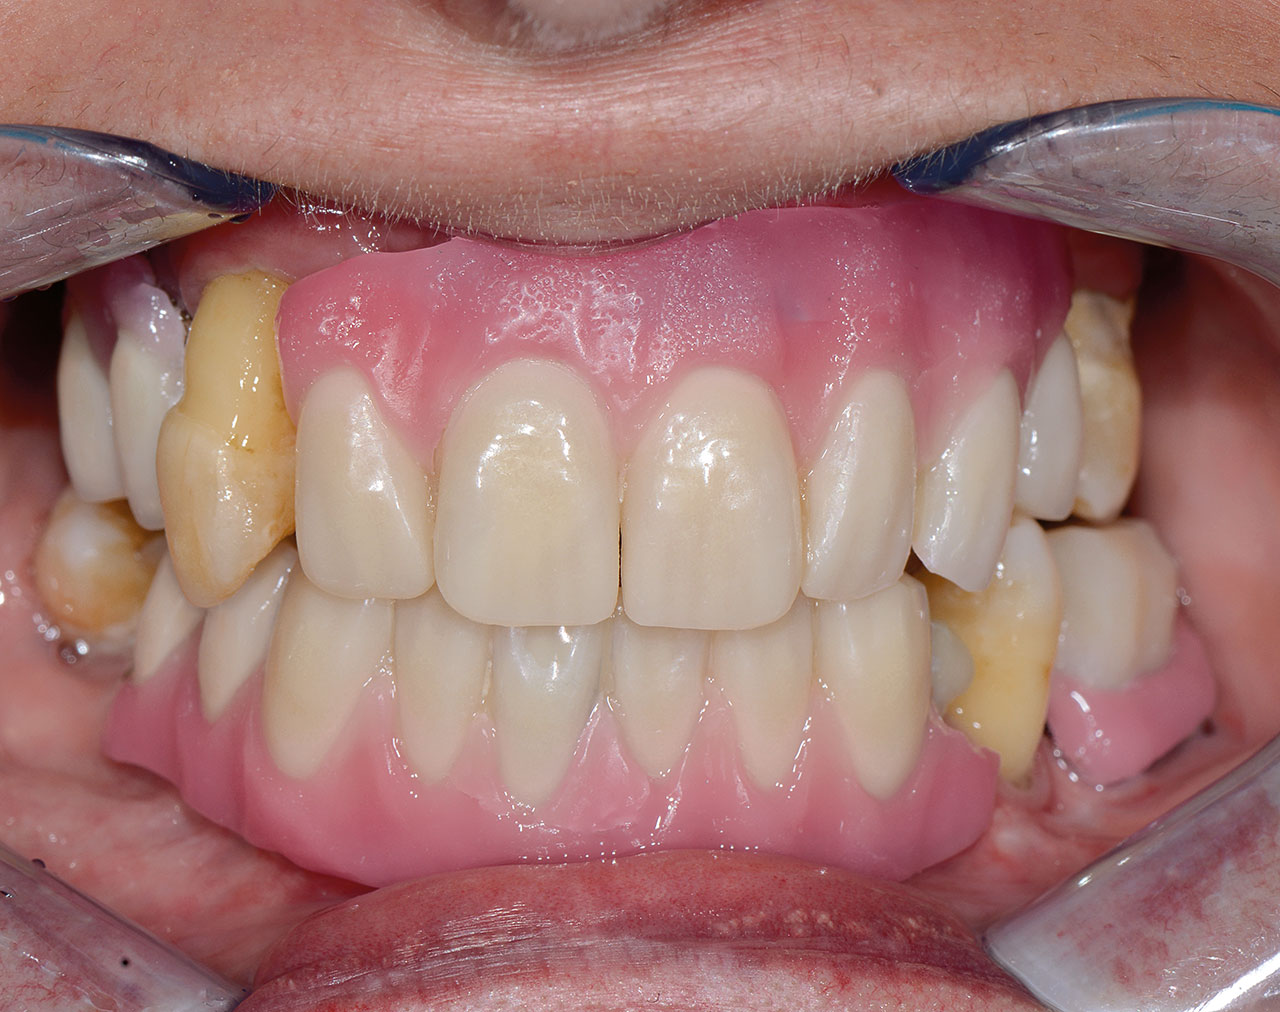 Ästhetik-Einprobe im Mund der Patientin: Es werden gezielt Informationen über Zahnaufstellung und Volumen der Prothesenkörper gesammelt.